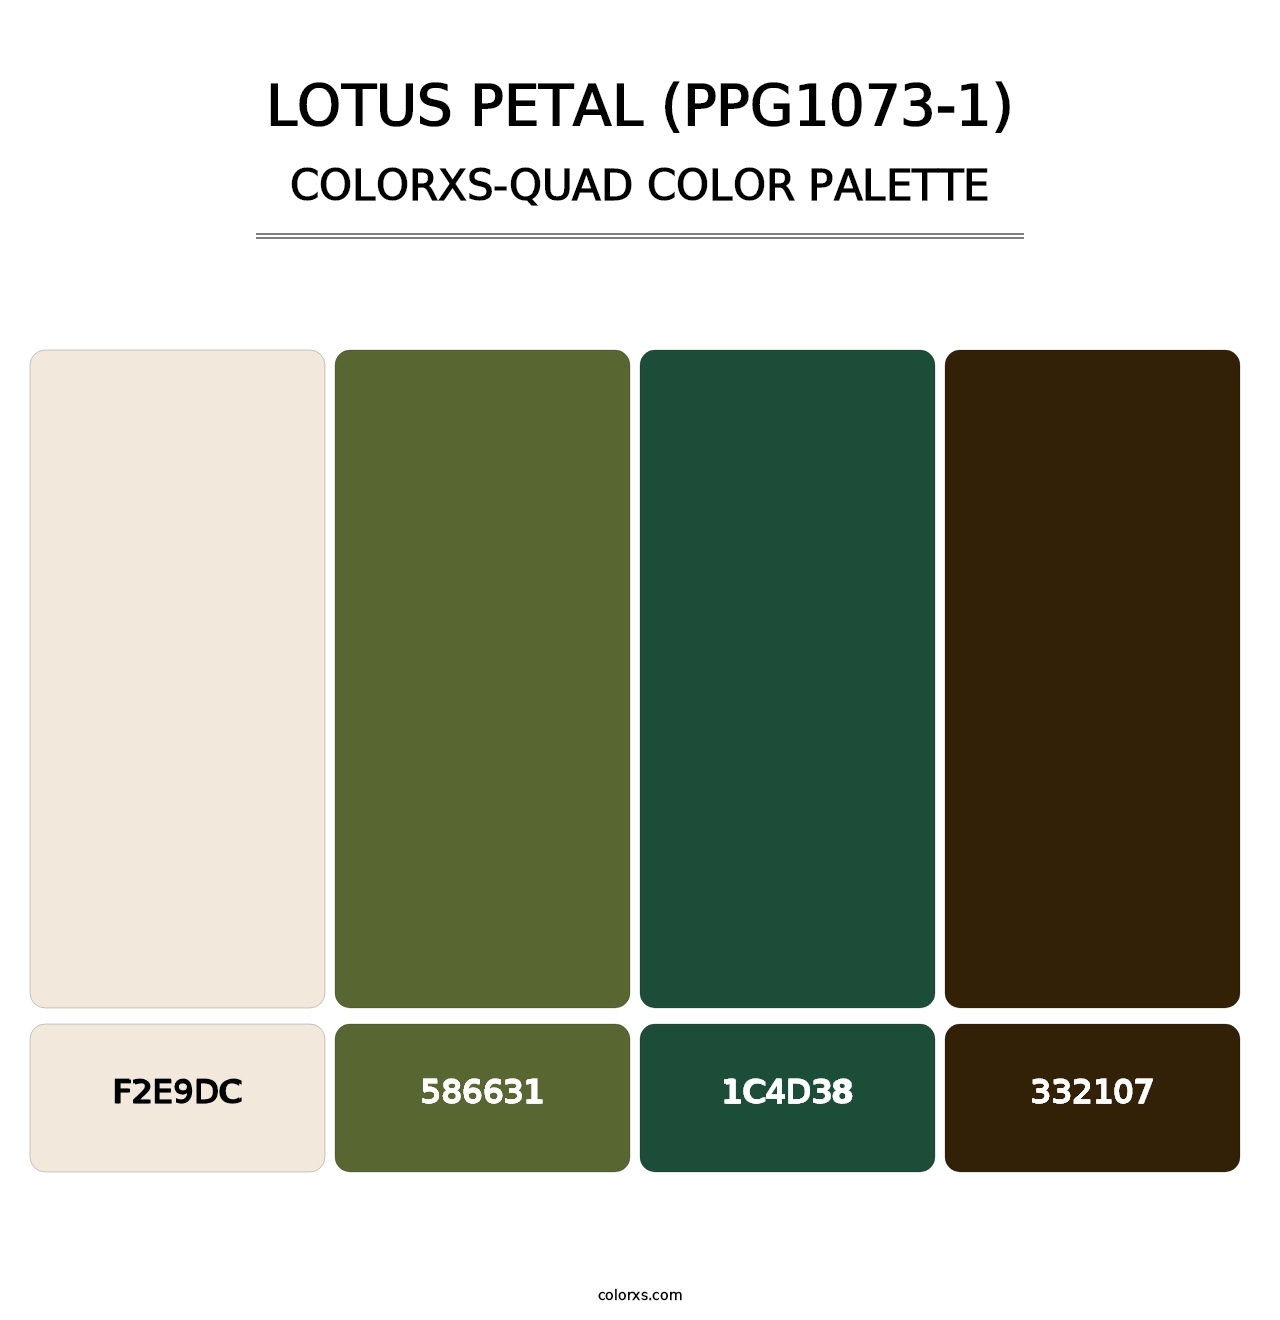 Lotus Petal (PPG1073-1) - Colorxs Quad Palette